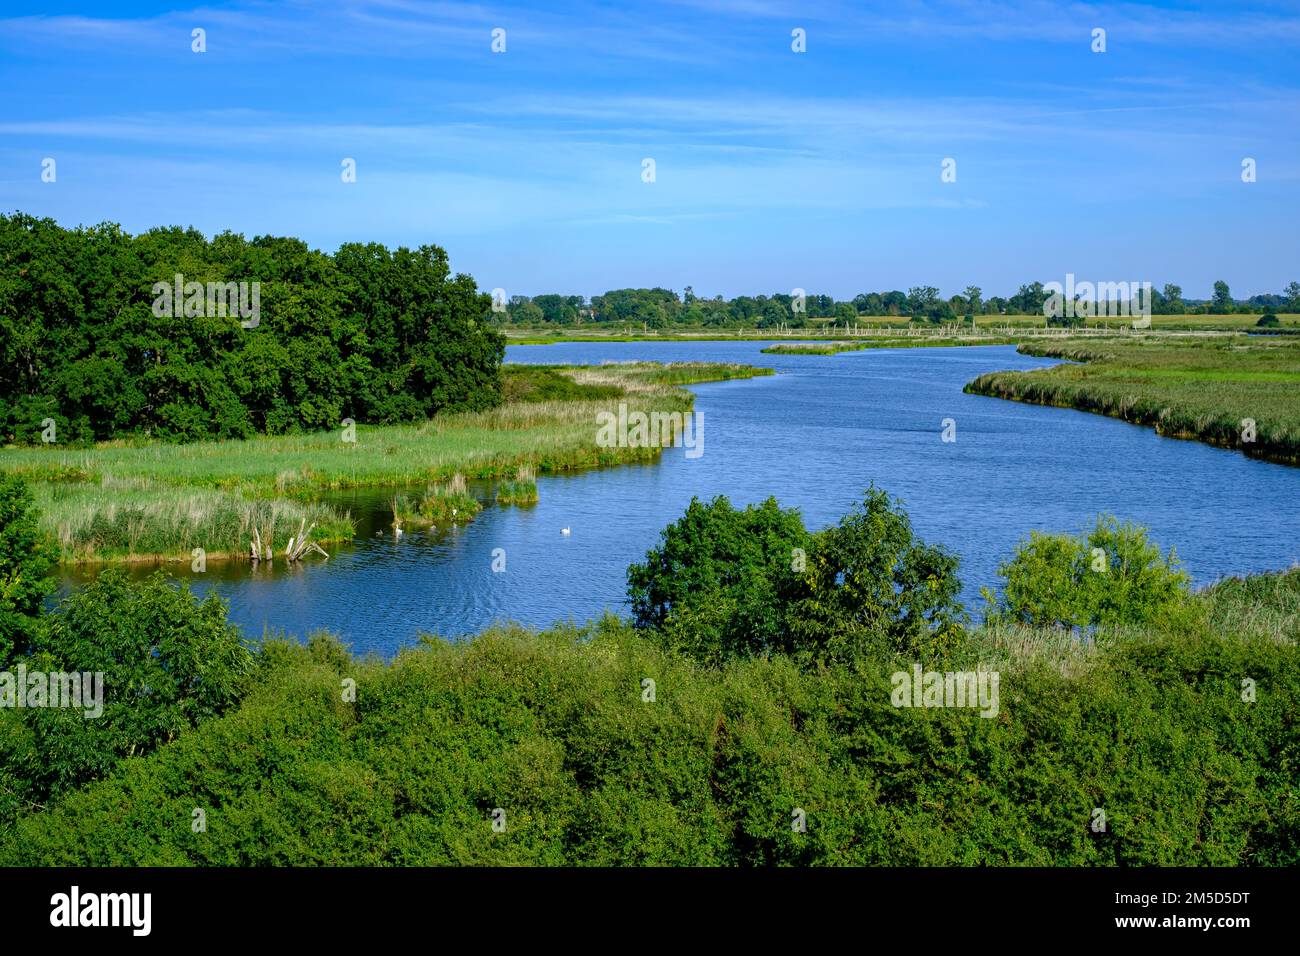 Flusslandschaft des sich schlängelnden Peene im Peene-Tal bei Randow, Hansestadt Demmin, Mecklenburg-Vorpommern, Deutschland. Stockfoto